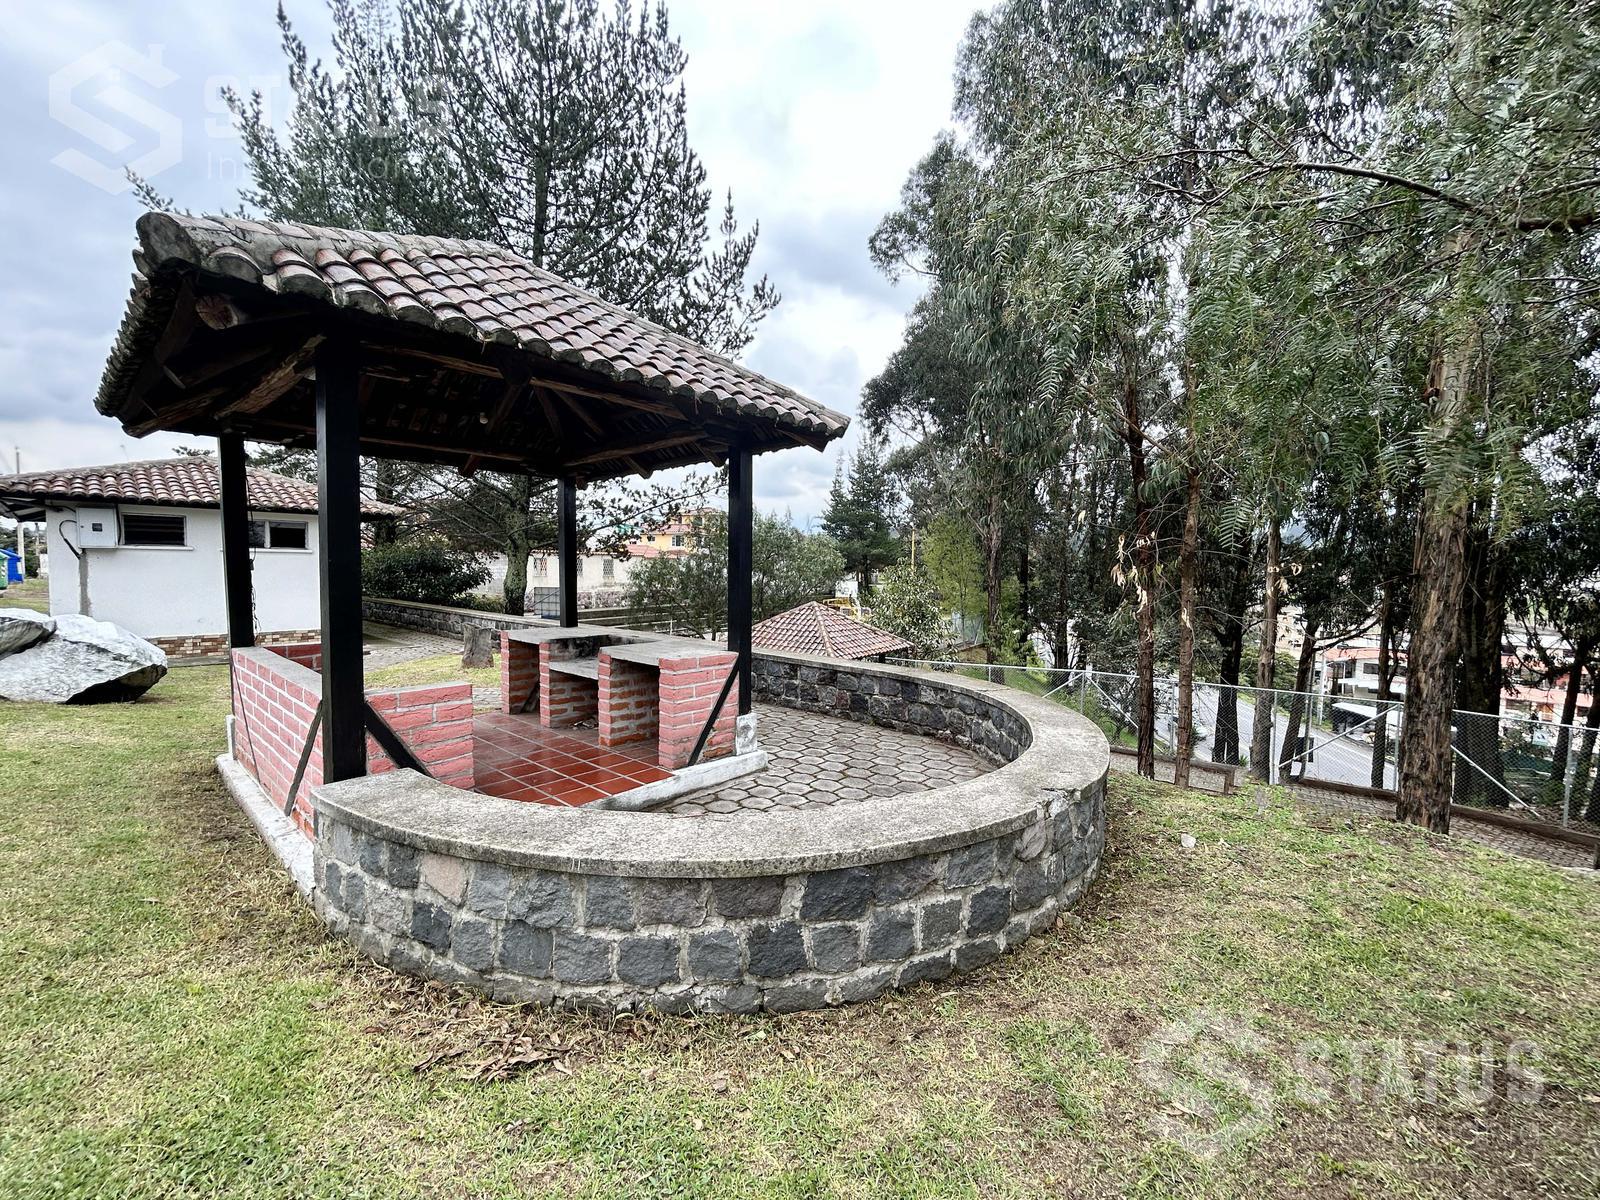 Vendo terreno de 491 m en urbanización con cerramiento, sector Sangolquí – Los Chillos, $70.000